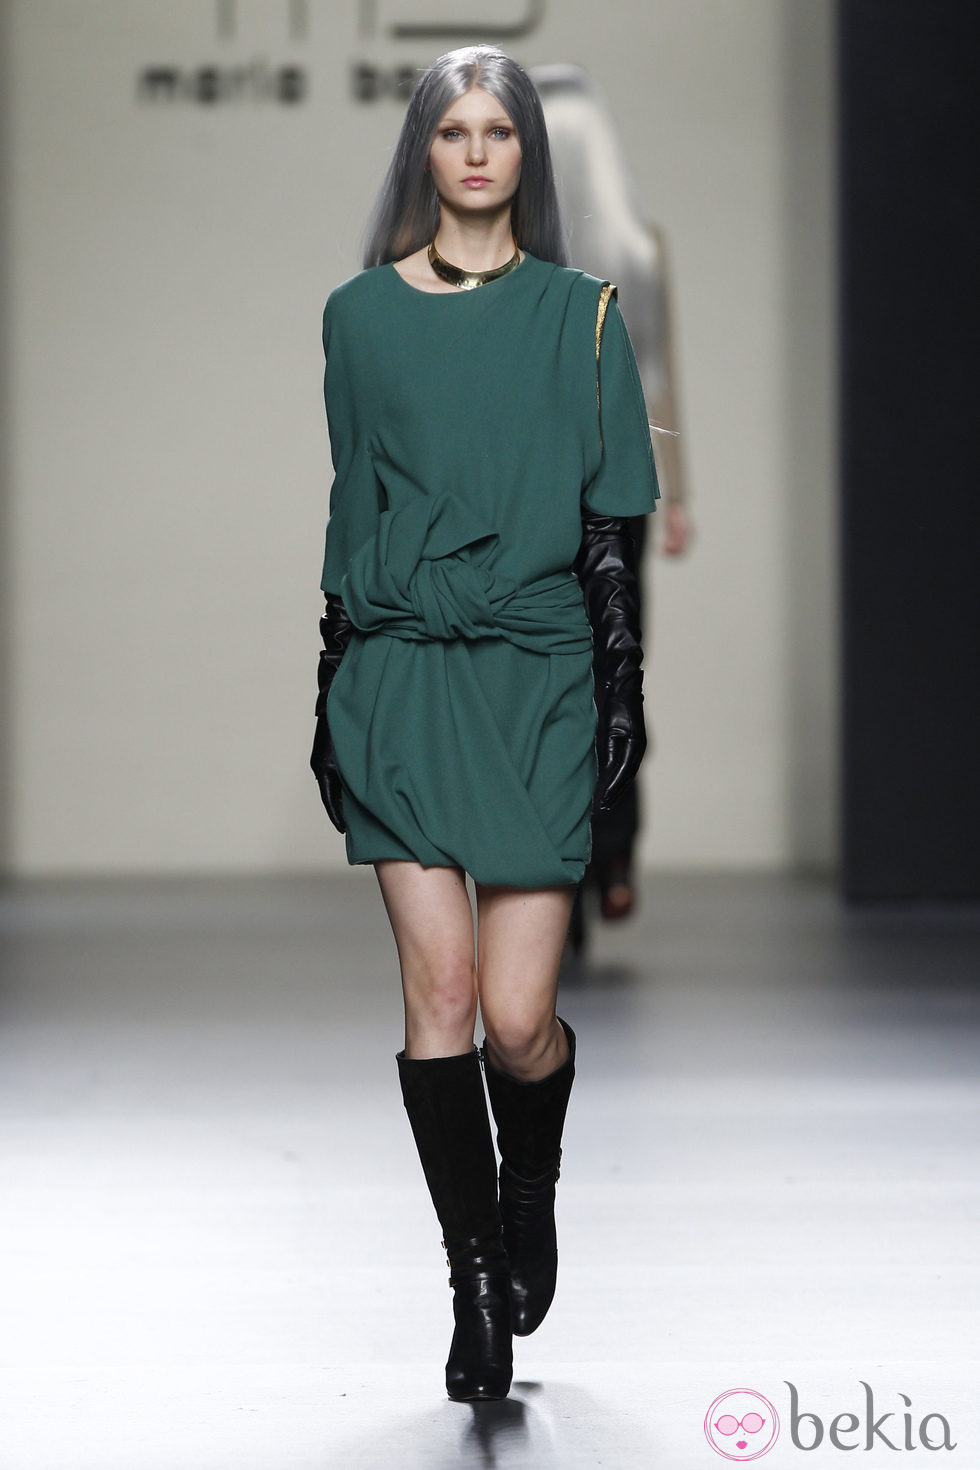 Vestido verde de María Barros en Madrid Fashion Week